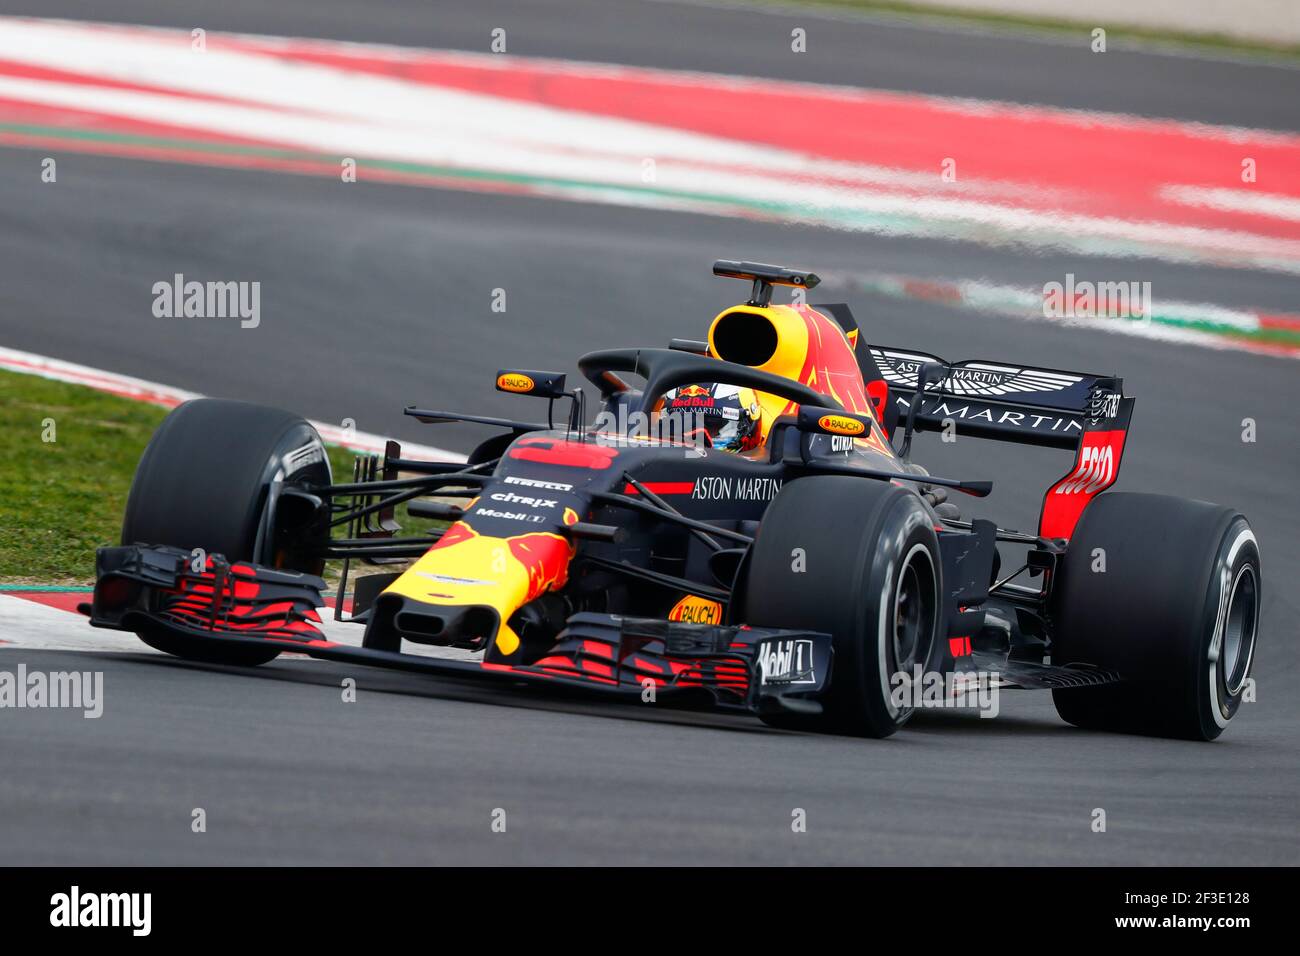 Max Verstappen 2017 Red Bull Race-Used suit - JM MotorsportsTrading